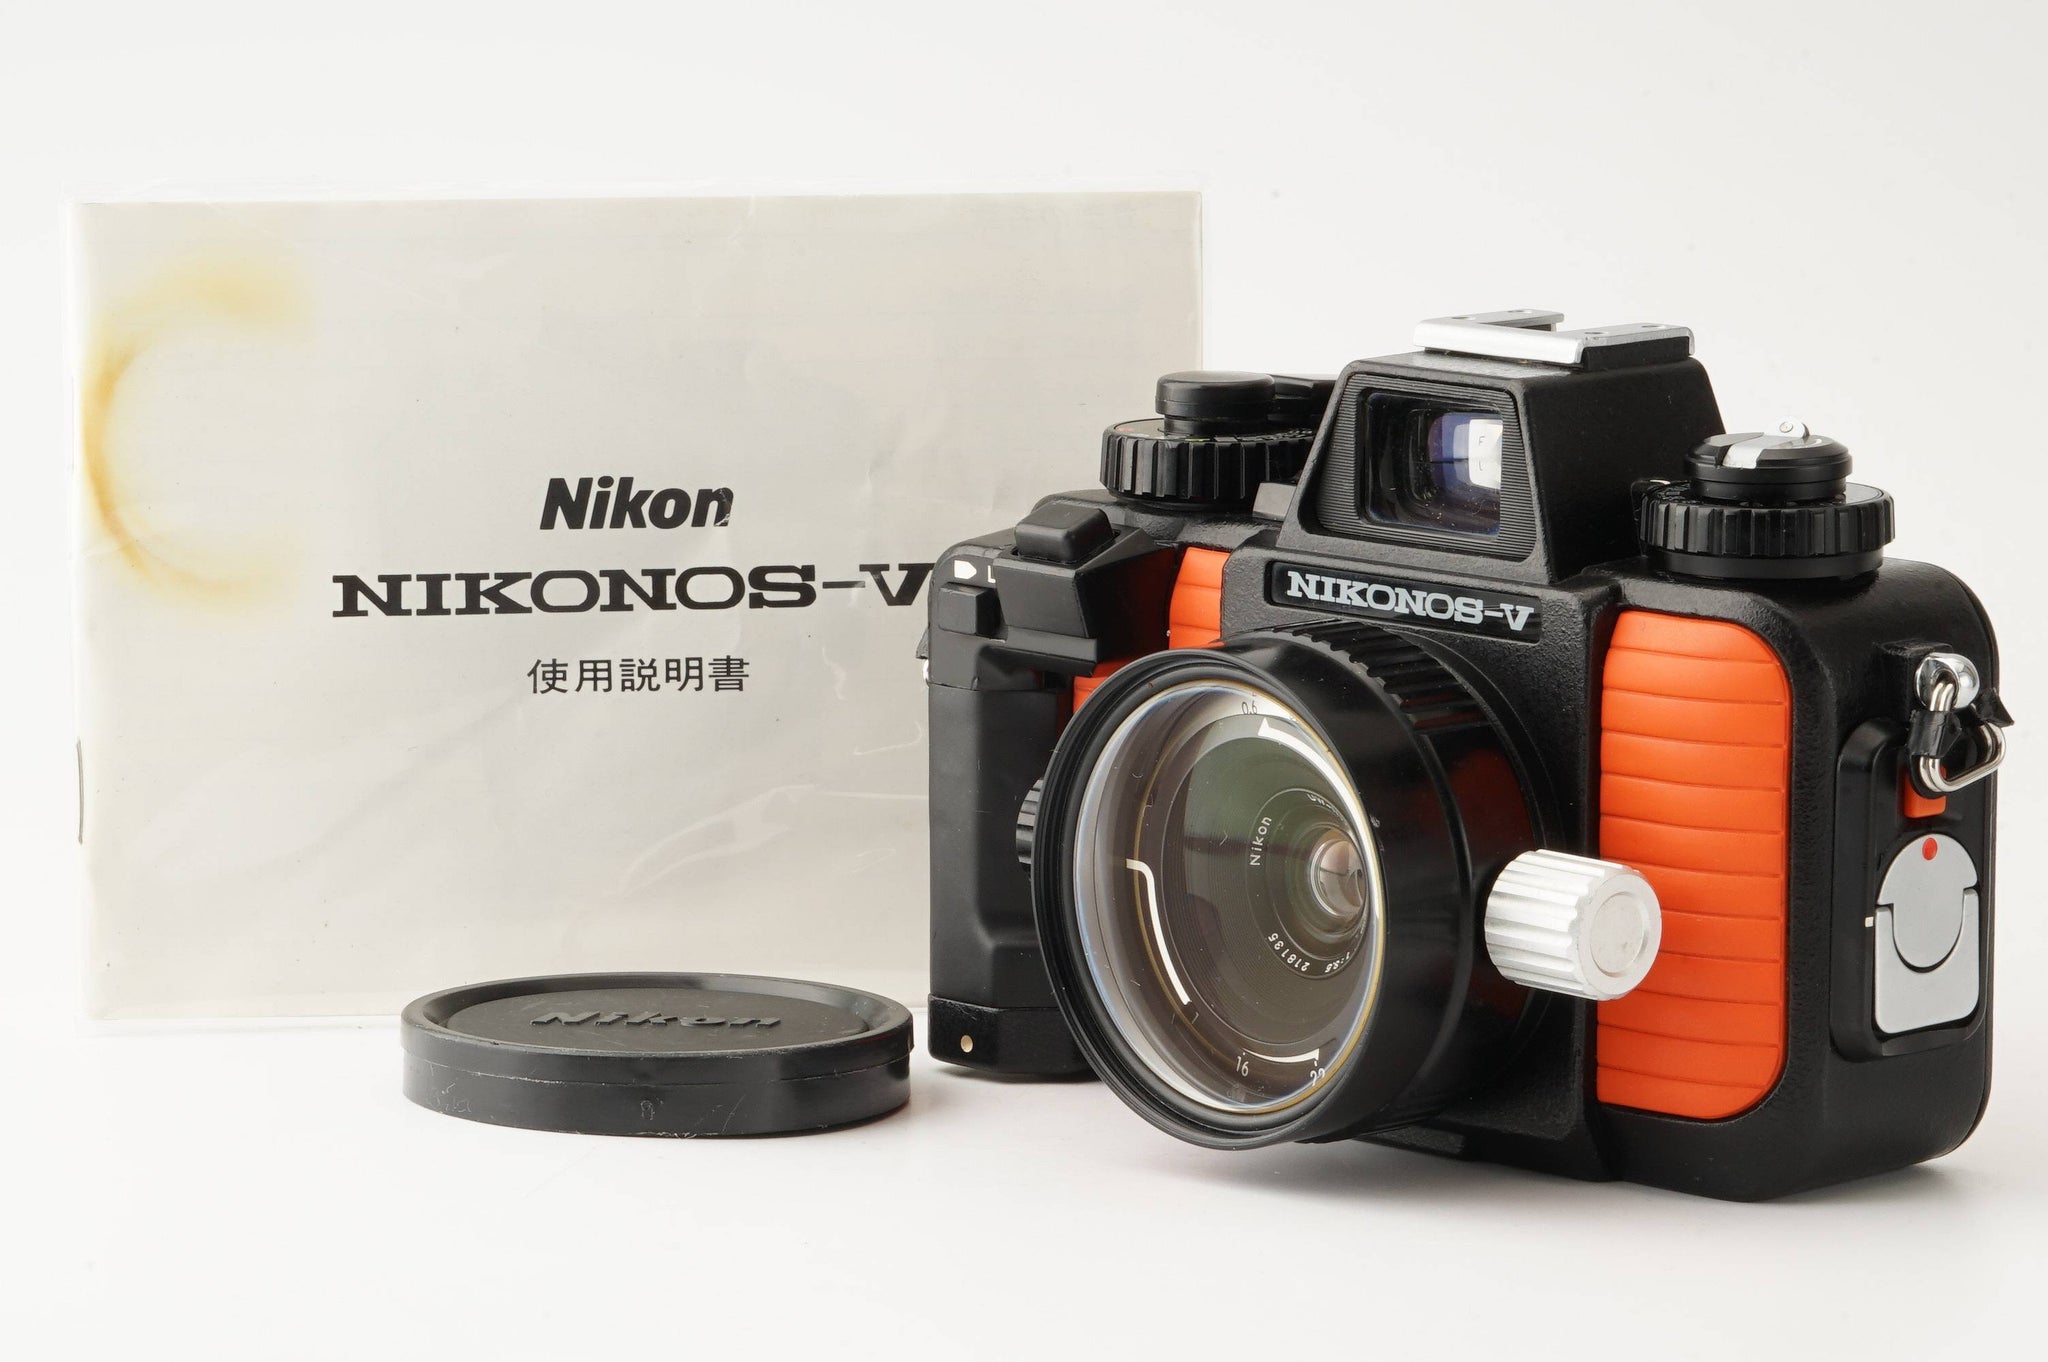 フィルムカメラNikon NIKONOS Ⅴ NIKKOR 35mm 28mm - フィルムカメラ